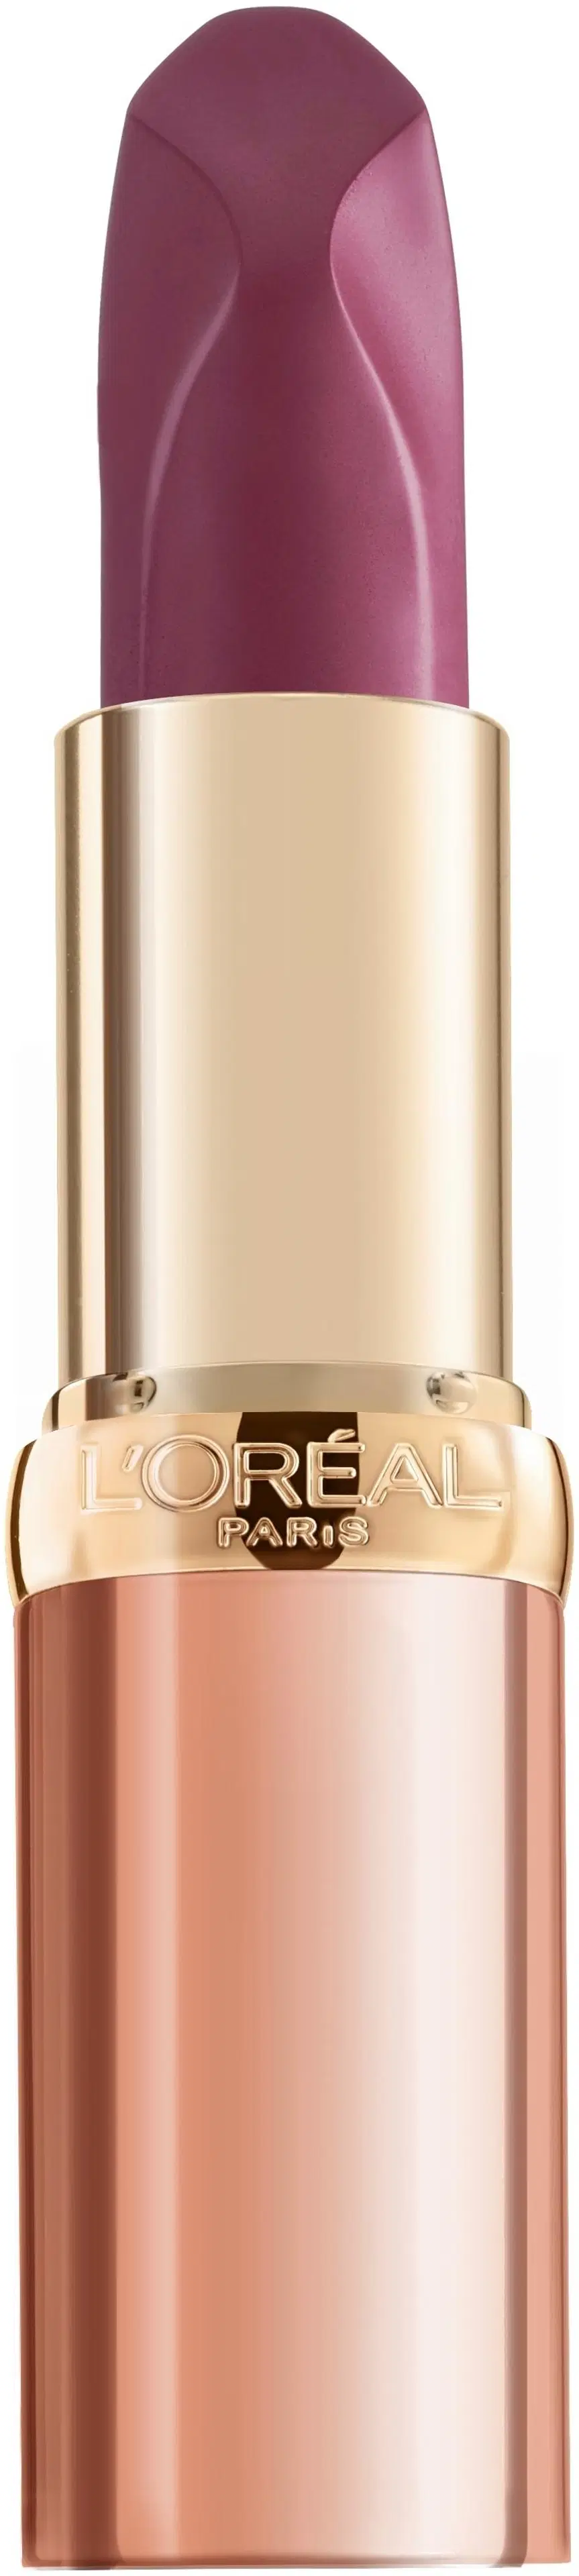 L'Oréal Paris Color Riche Nudes Insolent 183 Nu Exuberent -huulipuna 4,5 g